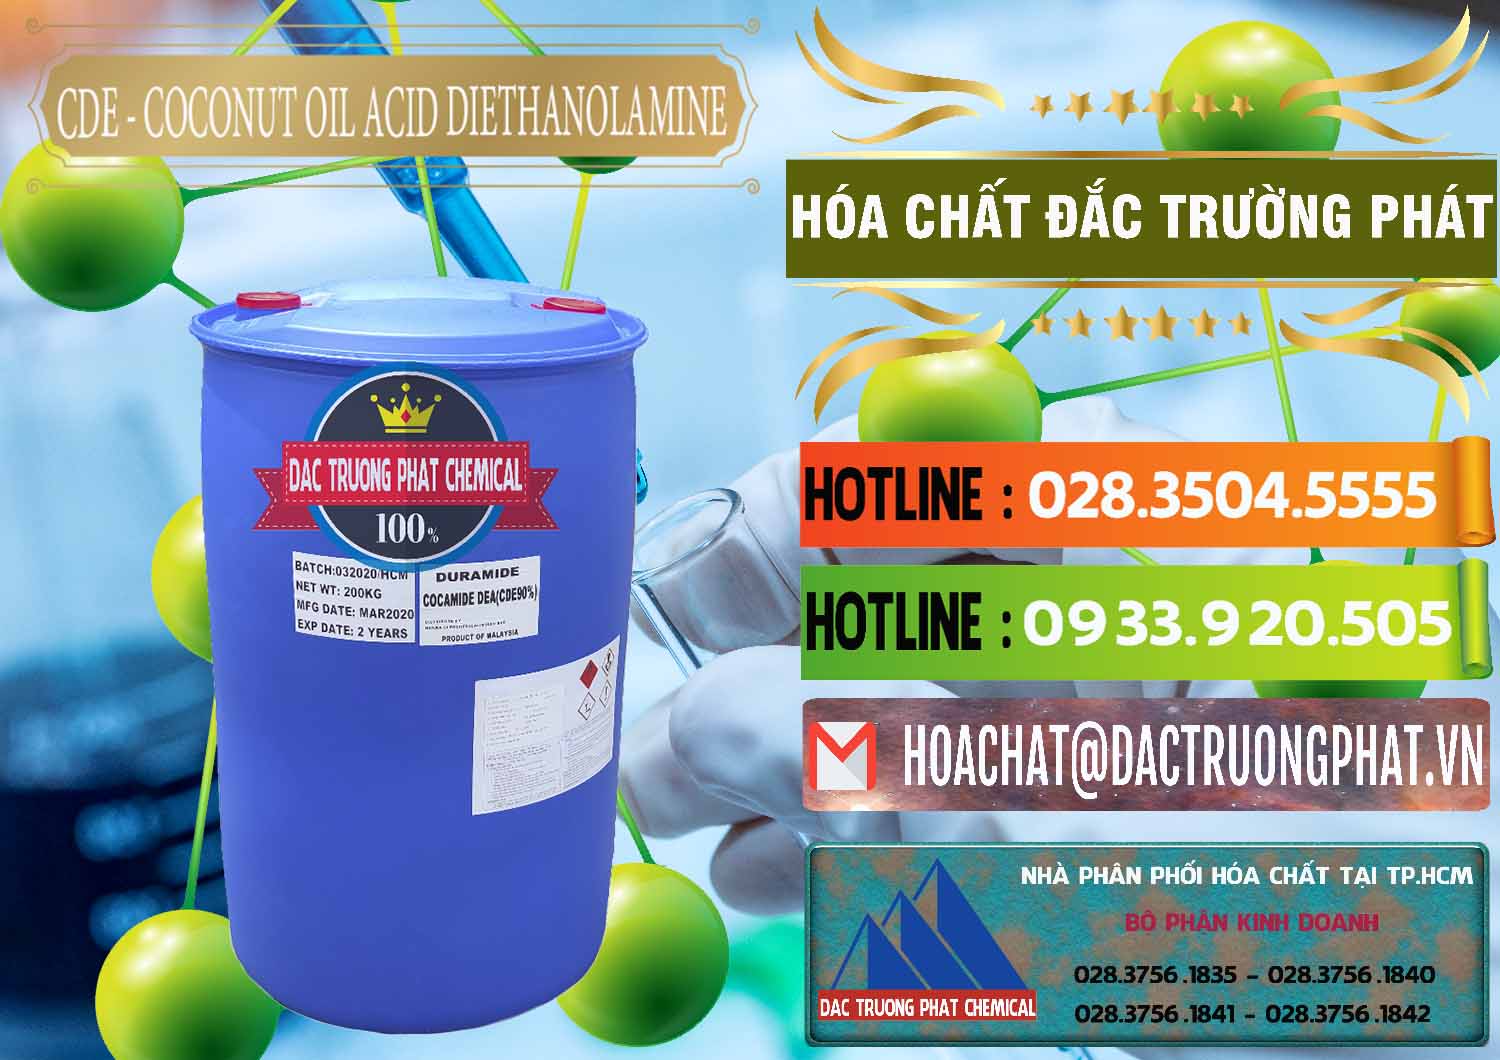 Công ty cung cấp và bán CDE - Coconut Oil Acid Diethanolamine Mã Lai Malaysia - 0311 - Nhà nhập khẩu - phân phối hóa chất tại TP.HCM - cungcaphoachat.com.vn